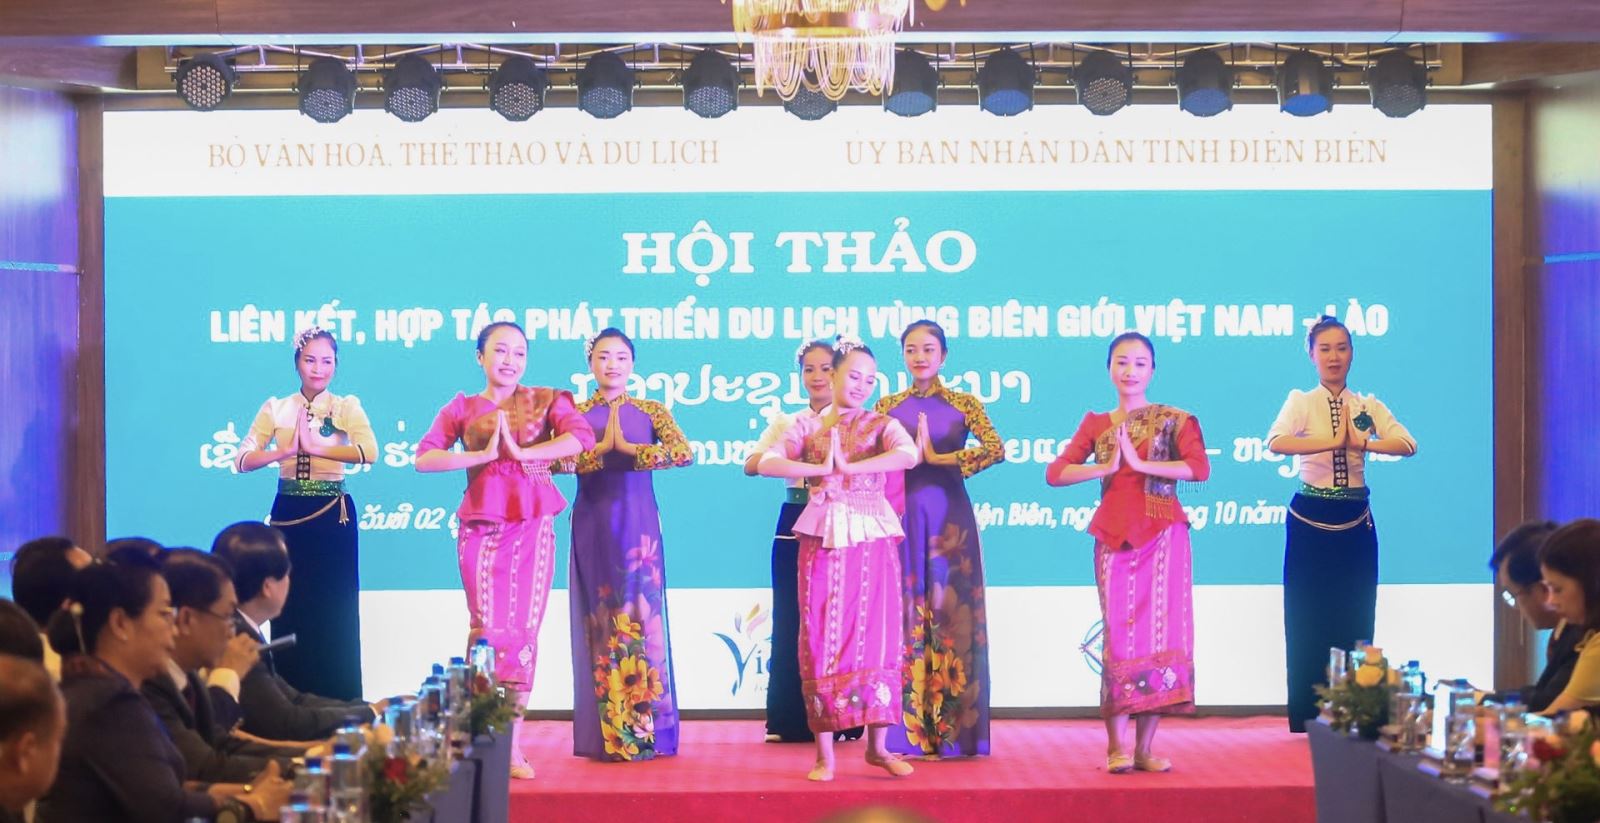 Hội thảo liên kết, hợp tác phát triển du lịch vùng biên giới Việt Nam - Lào